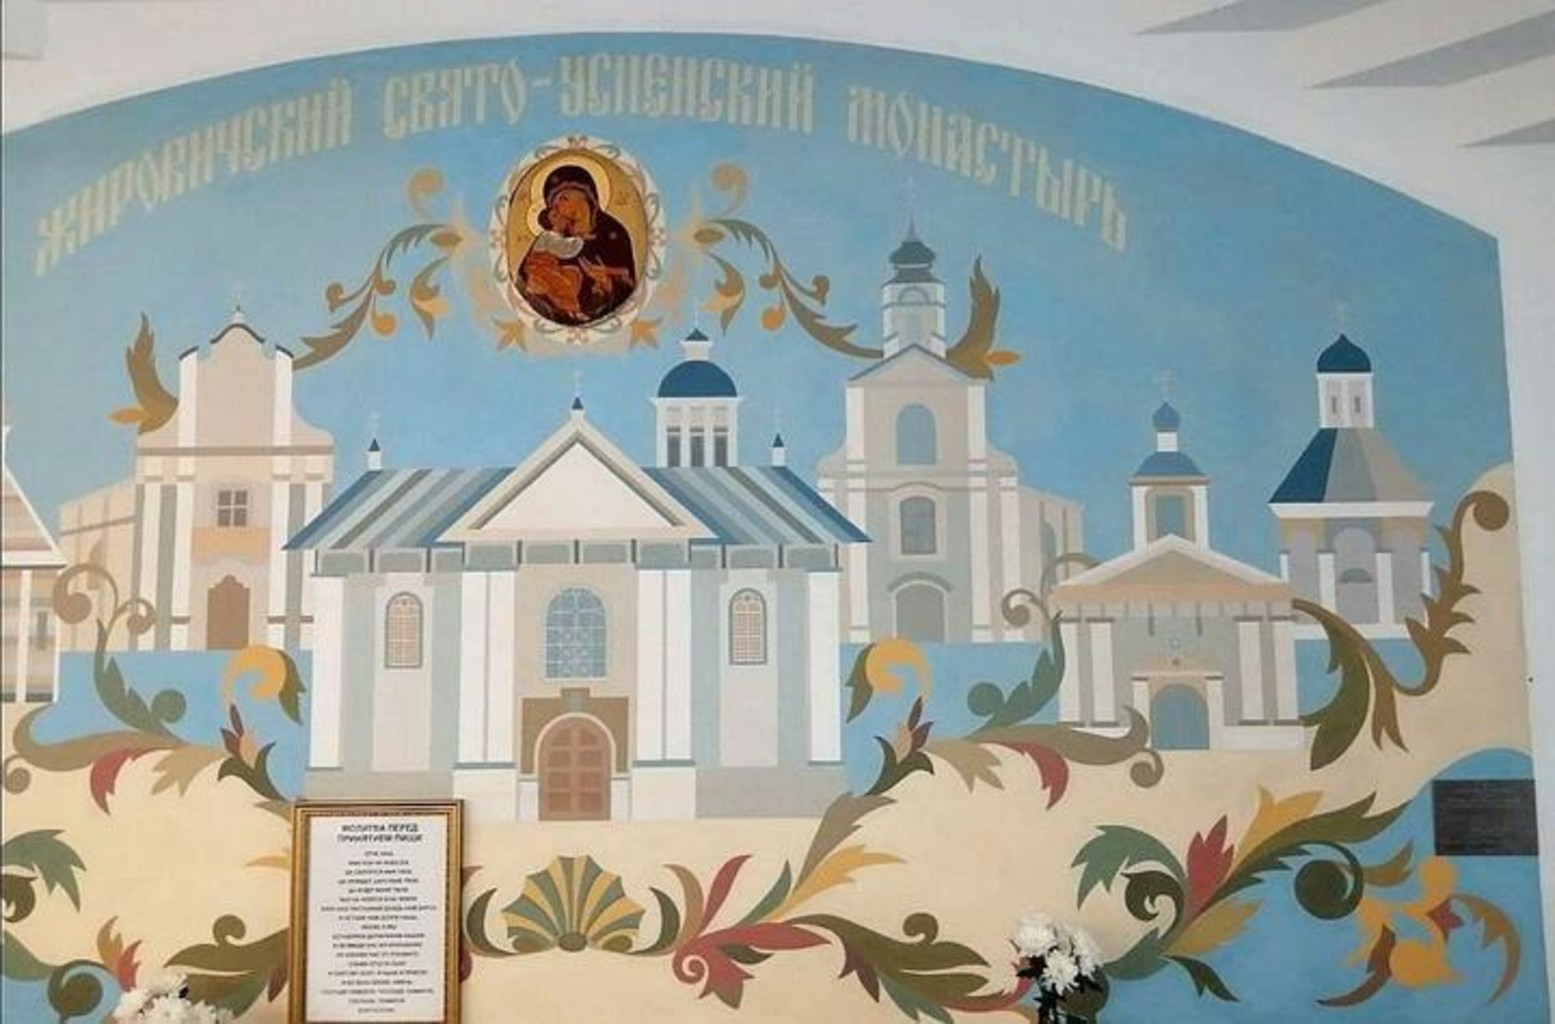 Так выглядела фреска работы Романа Бондаренко в Жировичском монастыре до уничтожения. Фото: "Хрысціянская візія"